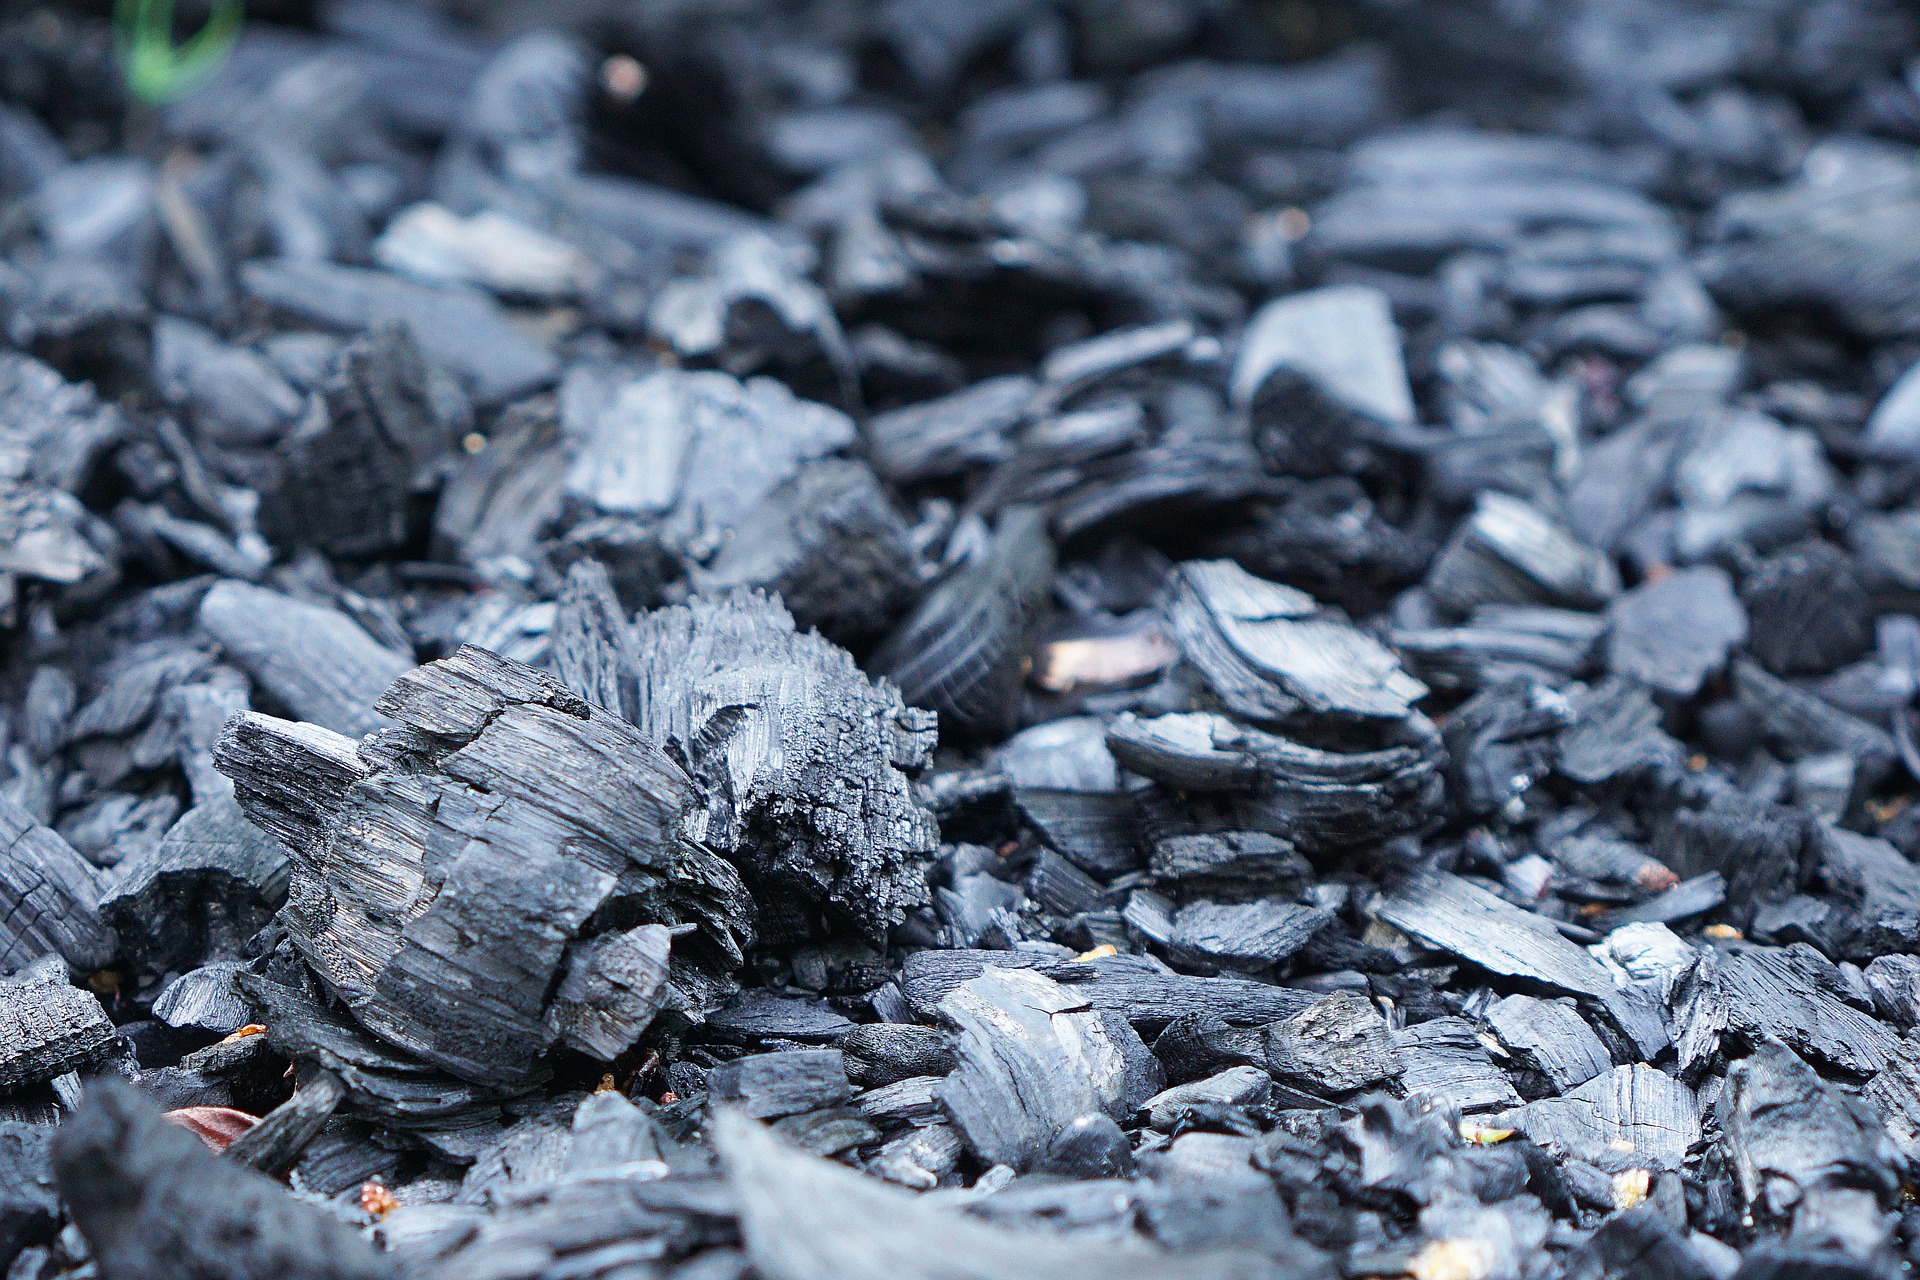 Carvão Vegetal: O que é, suas utilidades, problemas e diferença do carvão mineral